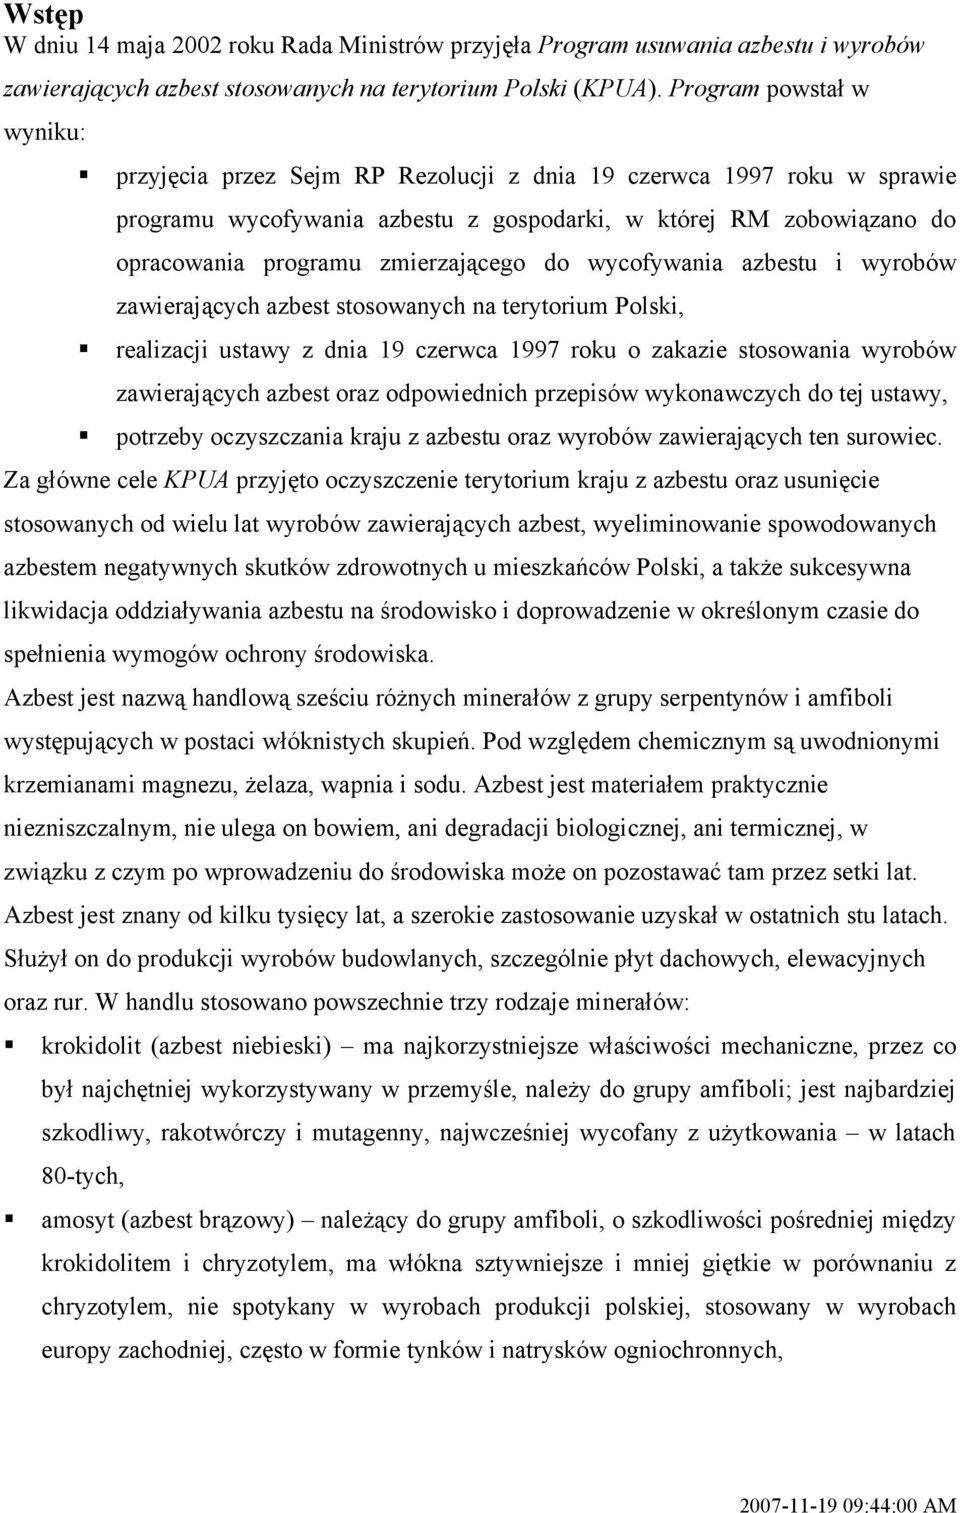 zmierzającego do wycofywania azbestu i wyrobów zawierających azbest stosowanych na terytorium Polski, realizacji ustawy z dnia 19 czerwca 1997 roku o zakazie stosowania wyrobów zawierających azbest